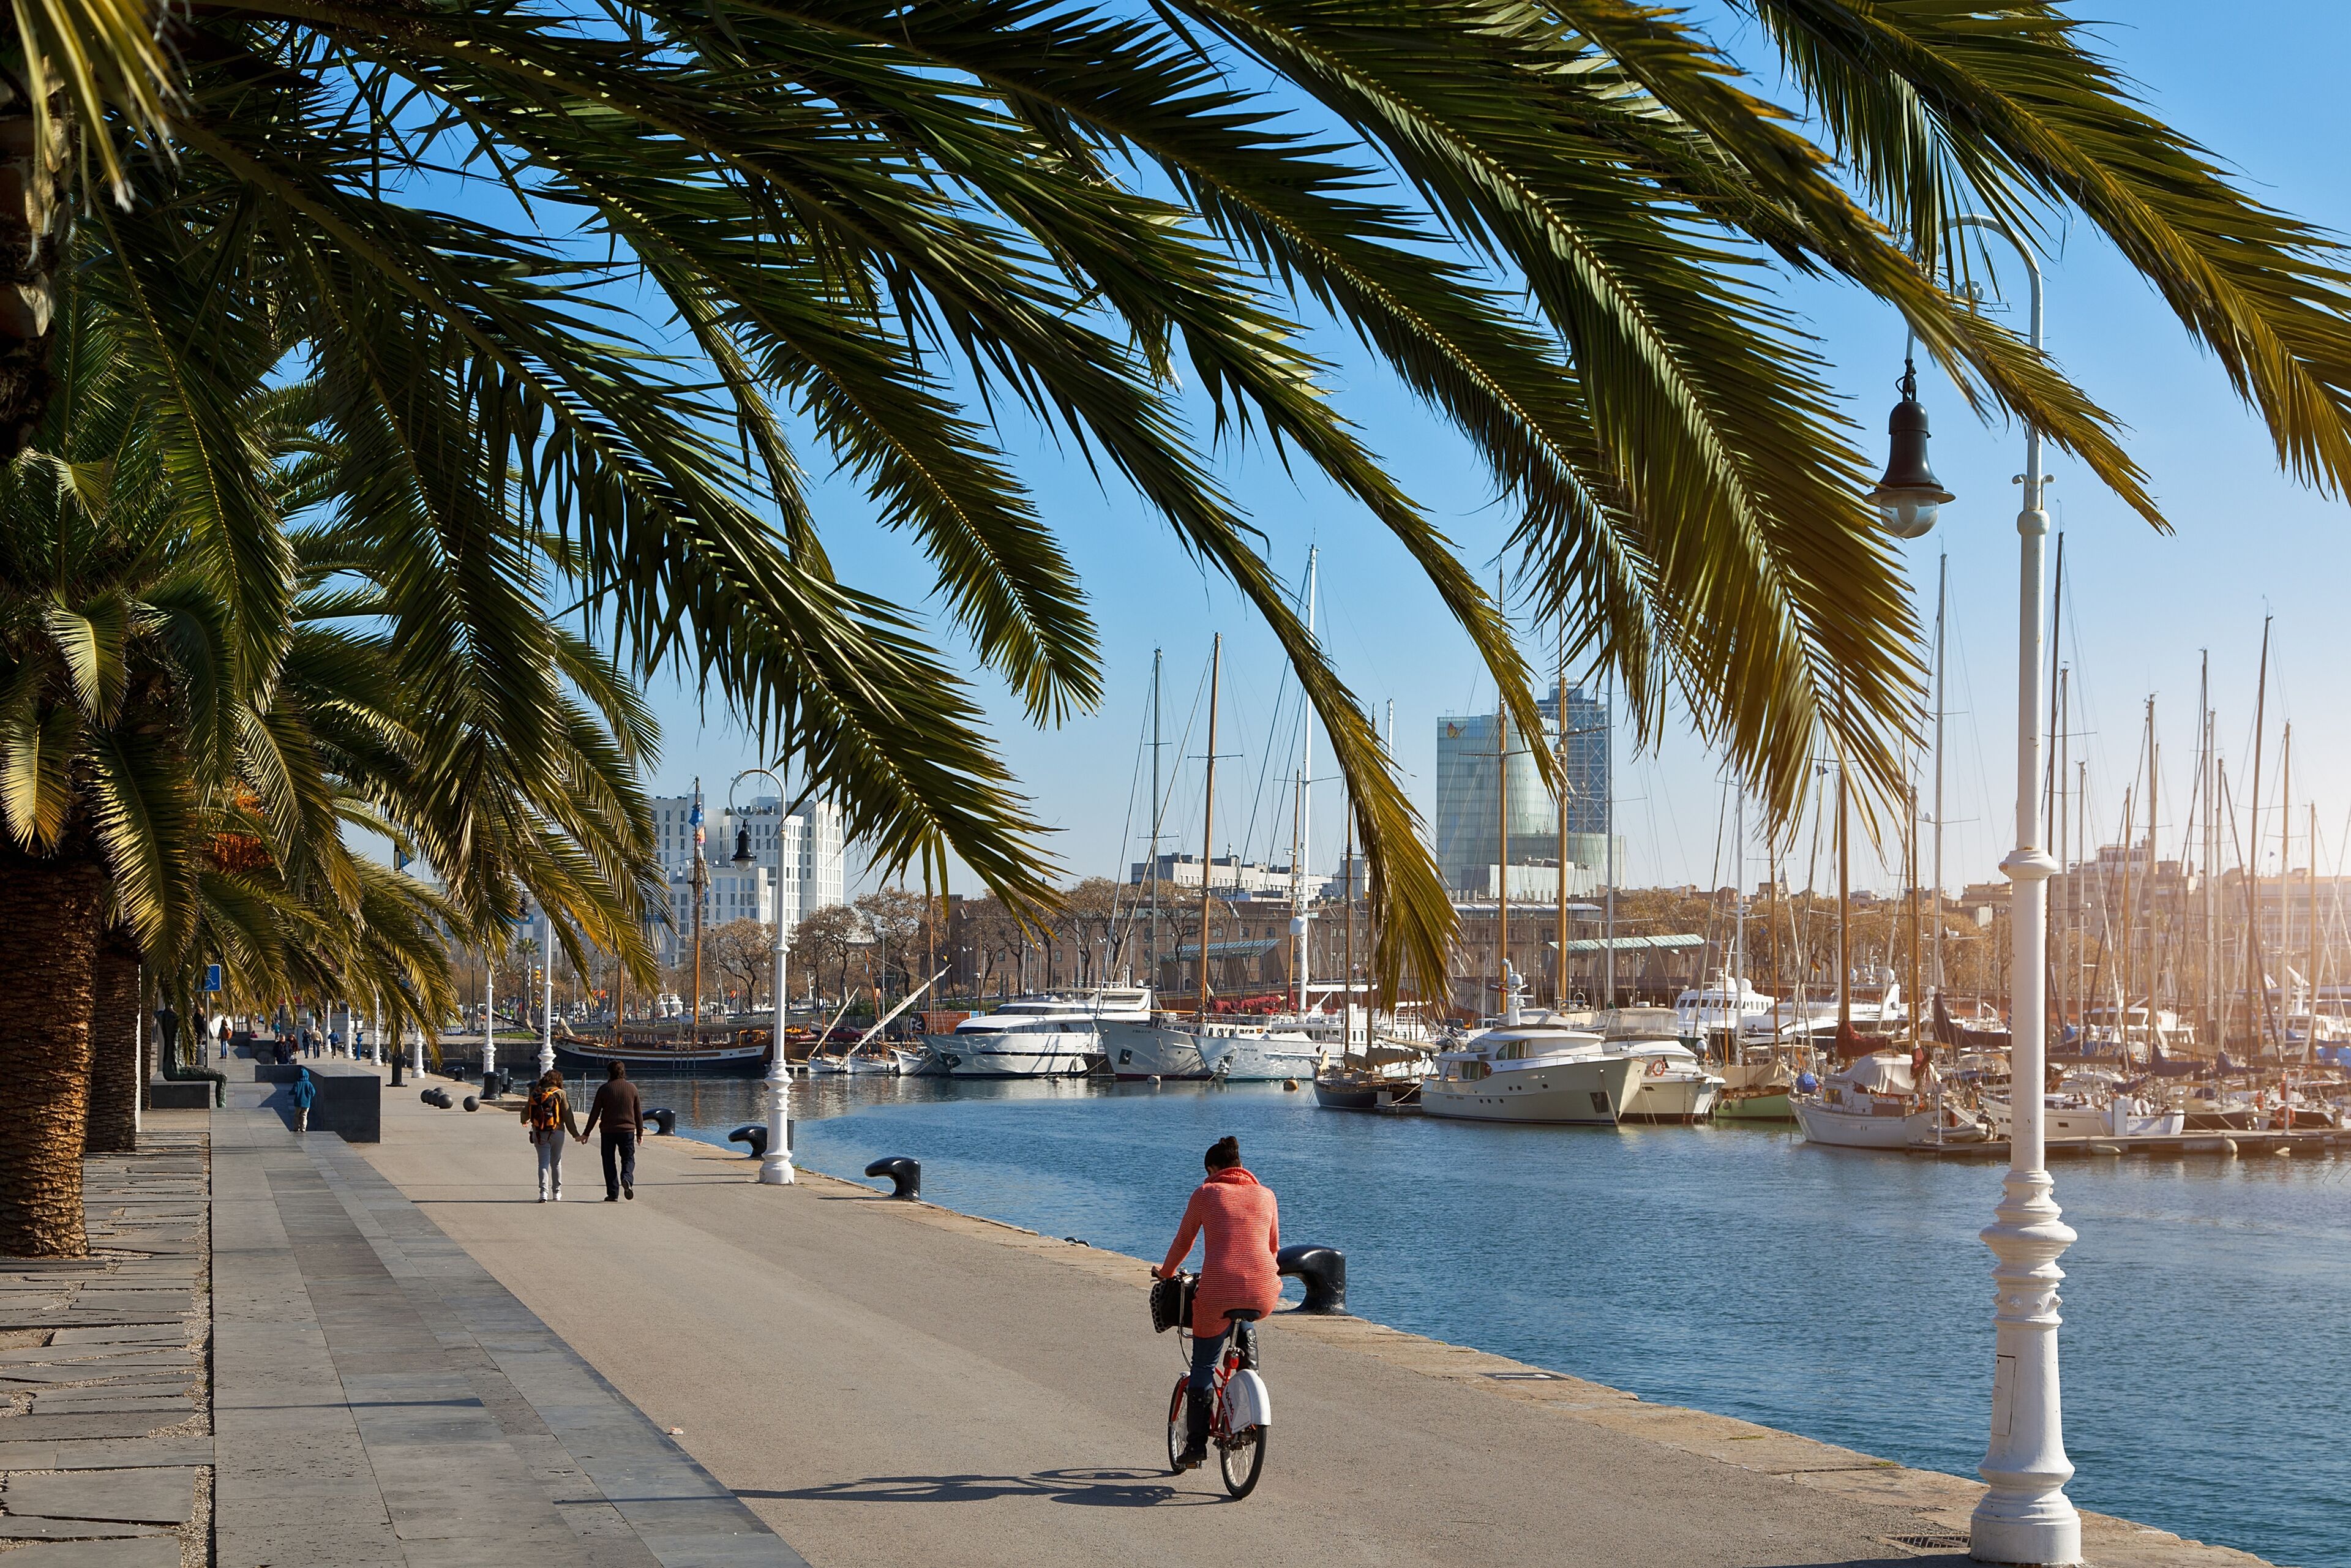 Un ciclista y peatones disfrutan de un día soleado en un paseo marítimo adornado con palmeras, con vistas a una marina llena de barcos y yates.